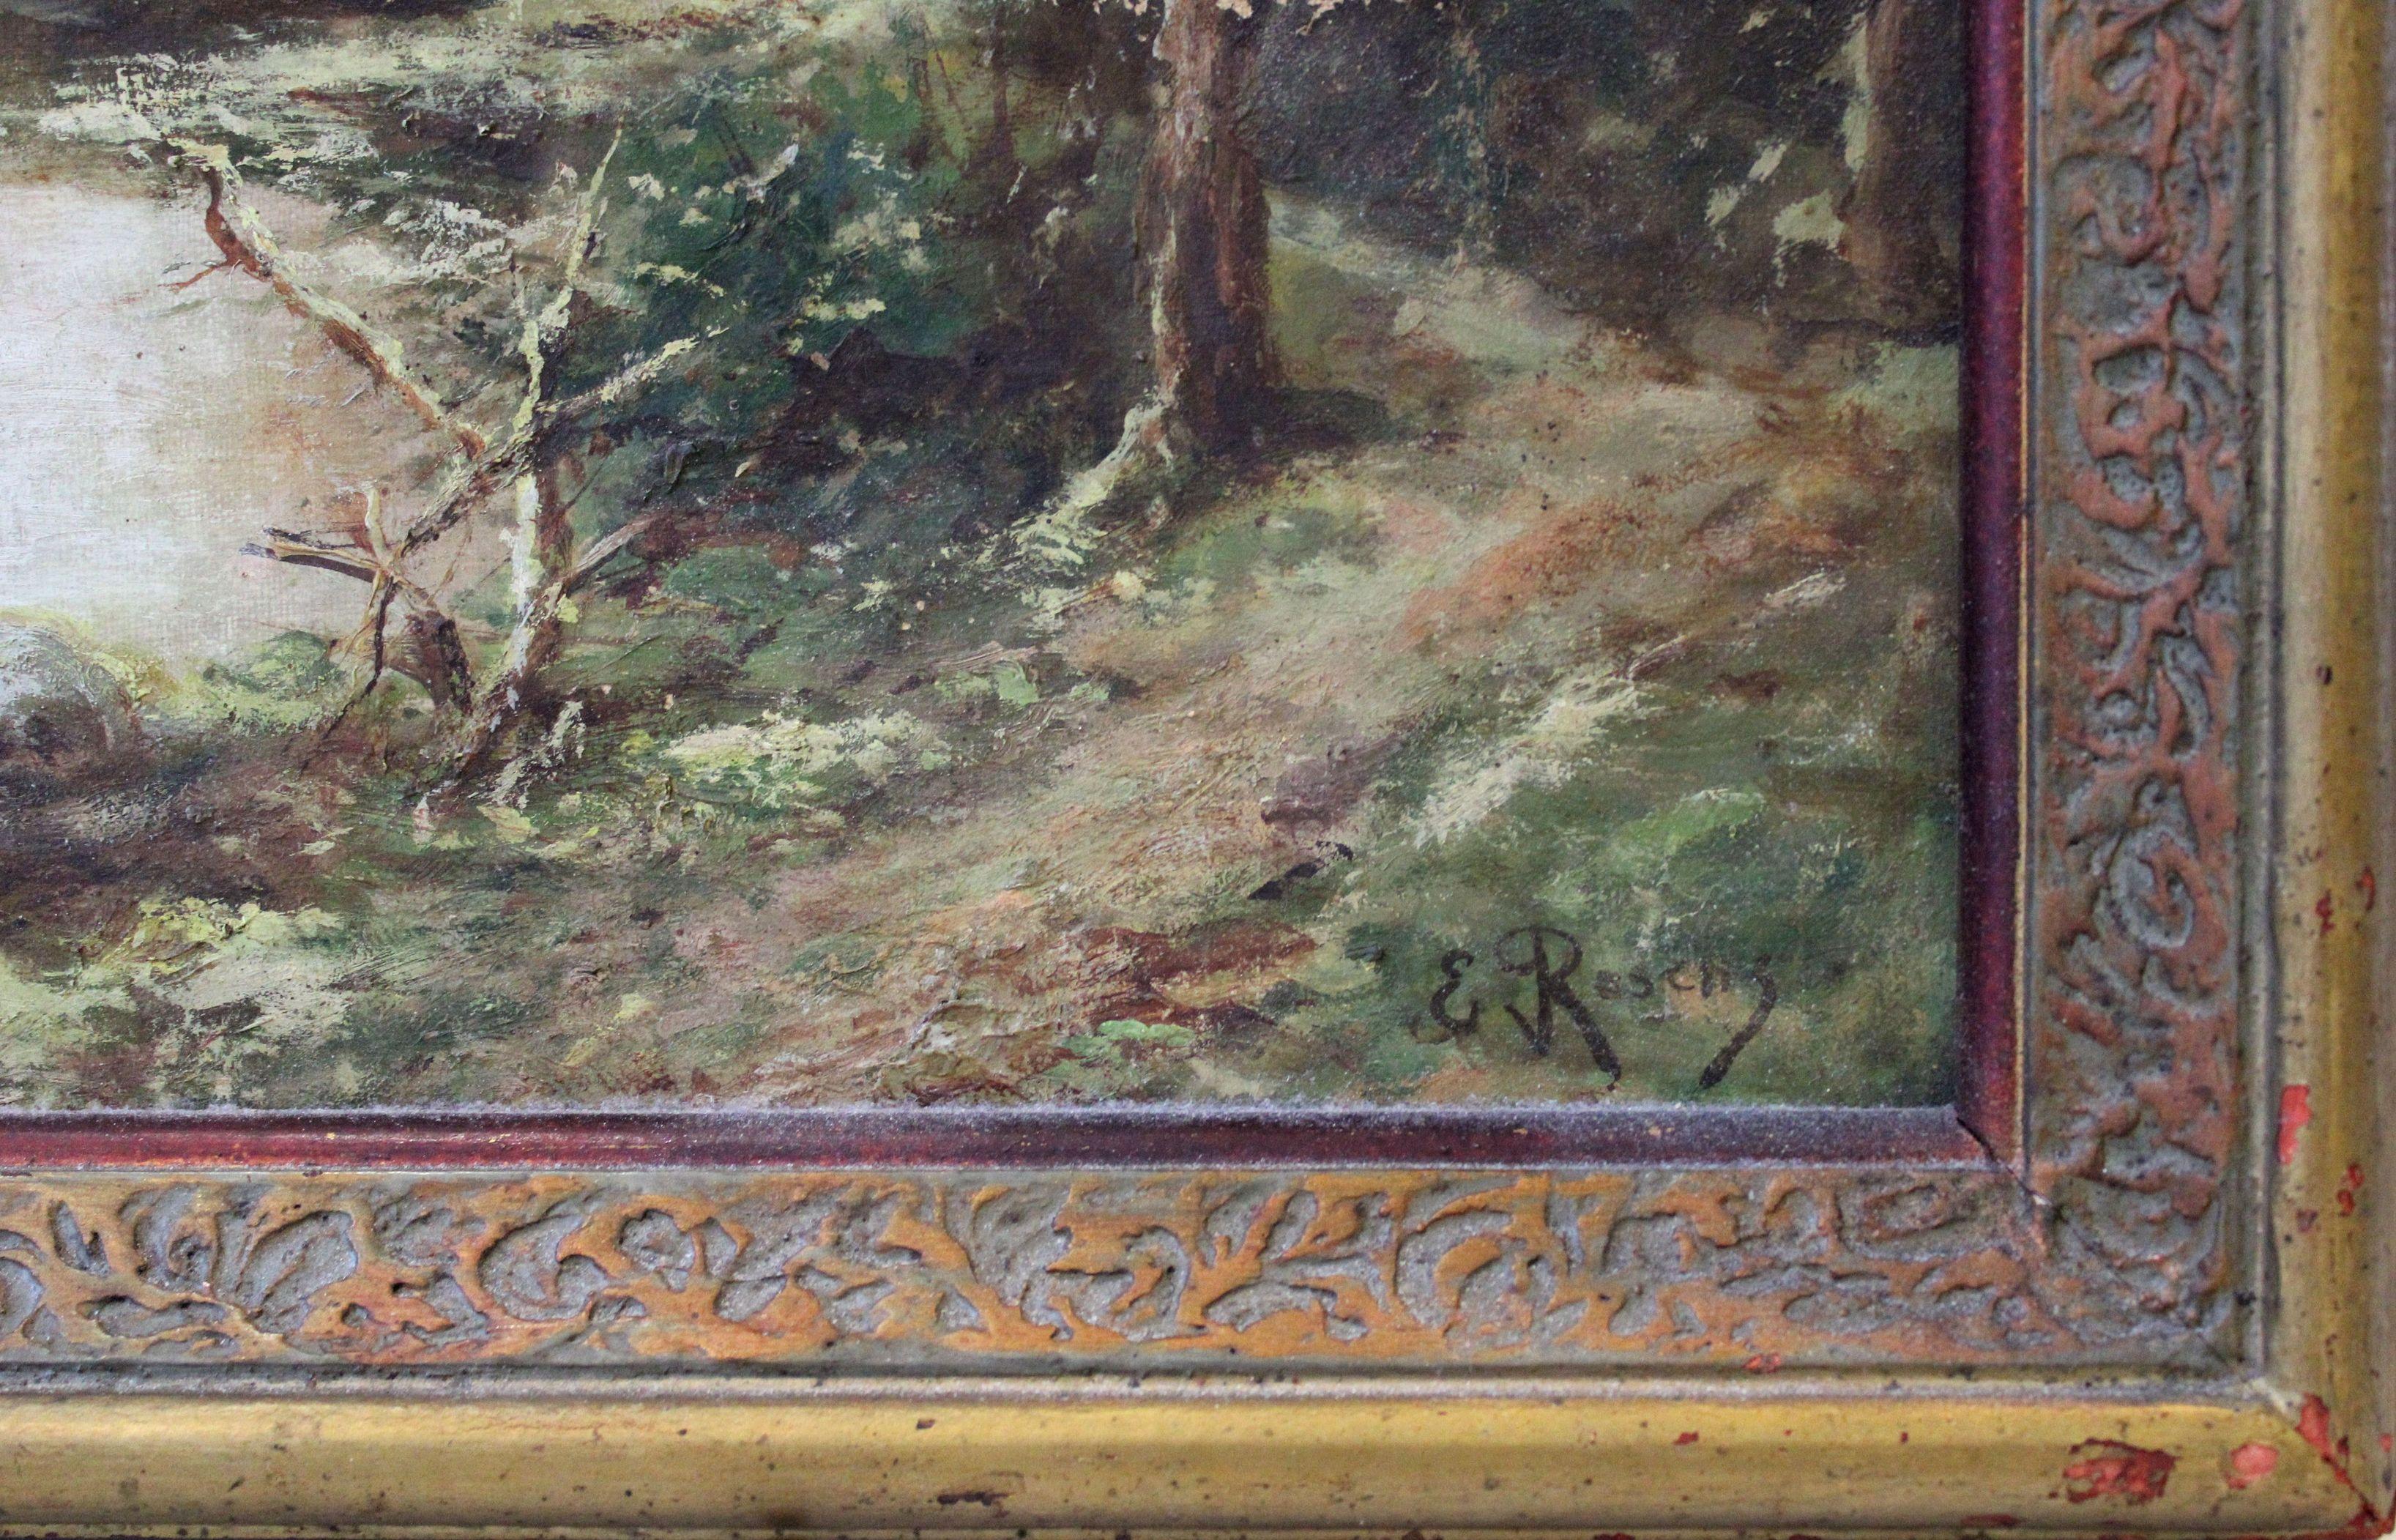 Landscape. Oil on canvas, 54x73 cm

